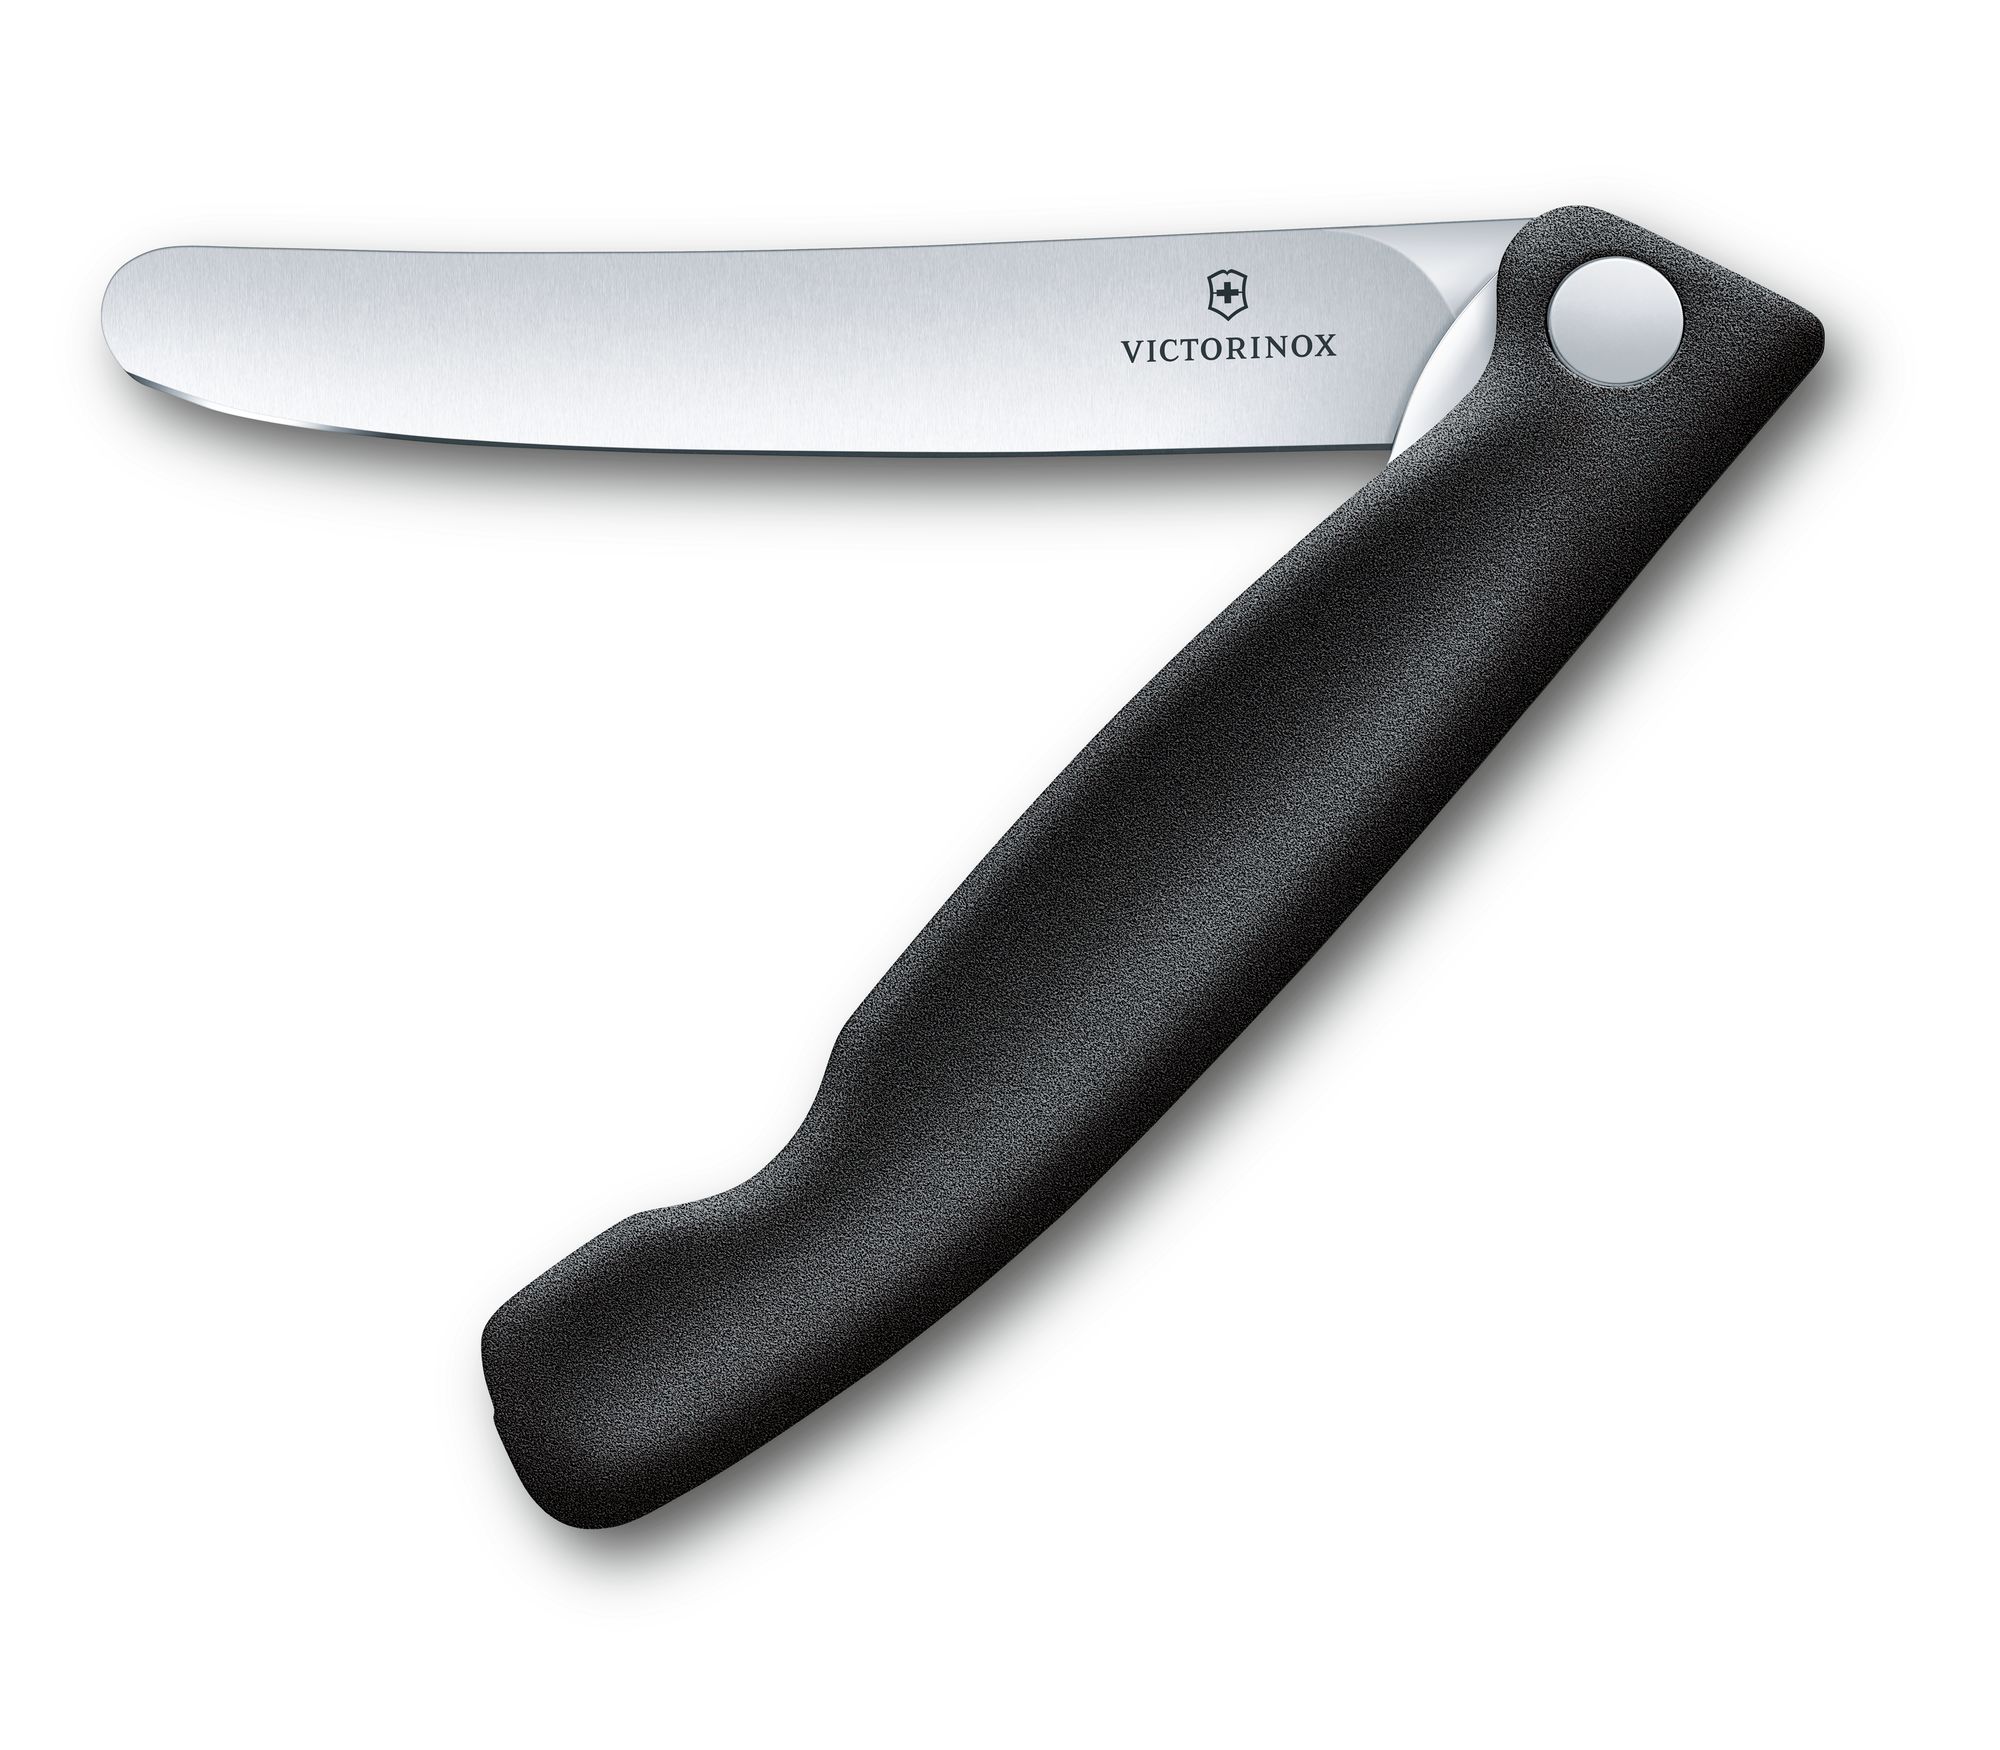 Juego de cuchillos para verdura SWISS CLASSIC VICTORINOX 6.7113.3G por  20,69 €